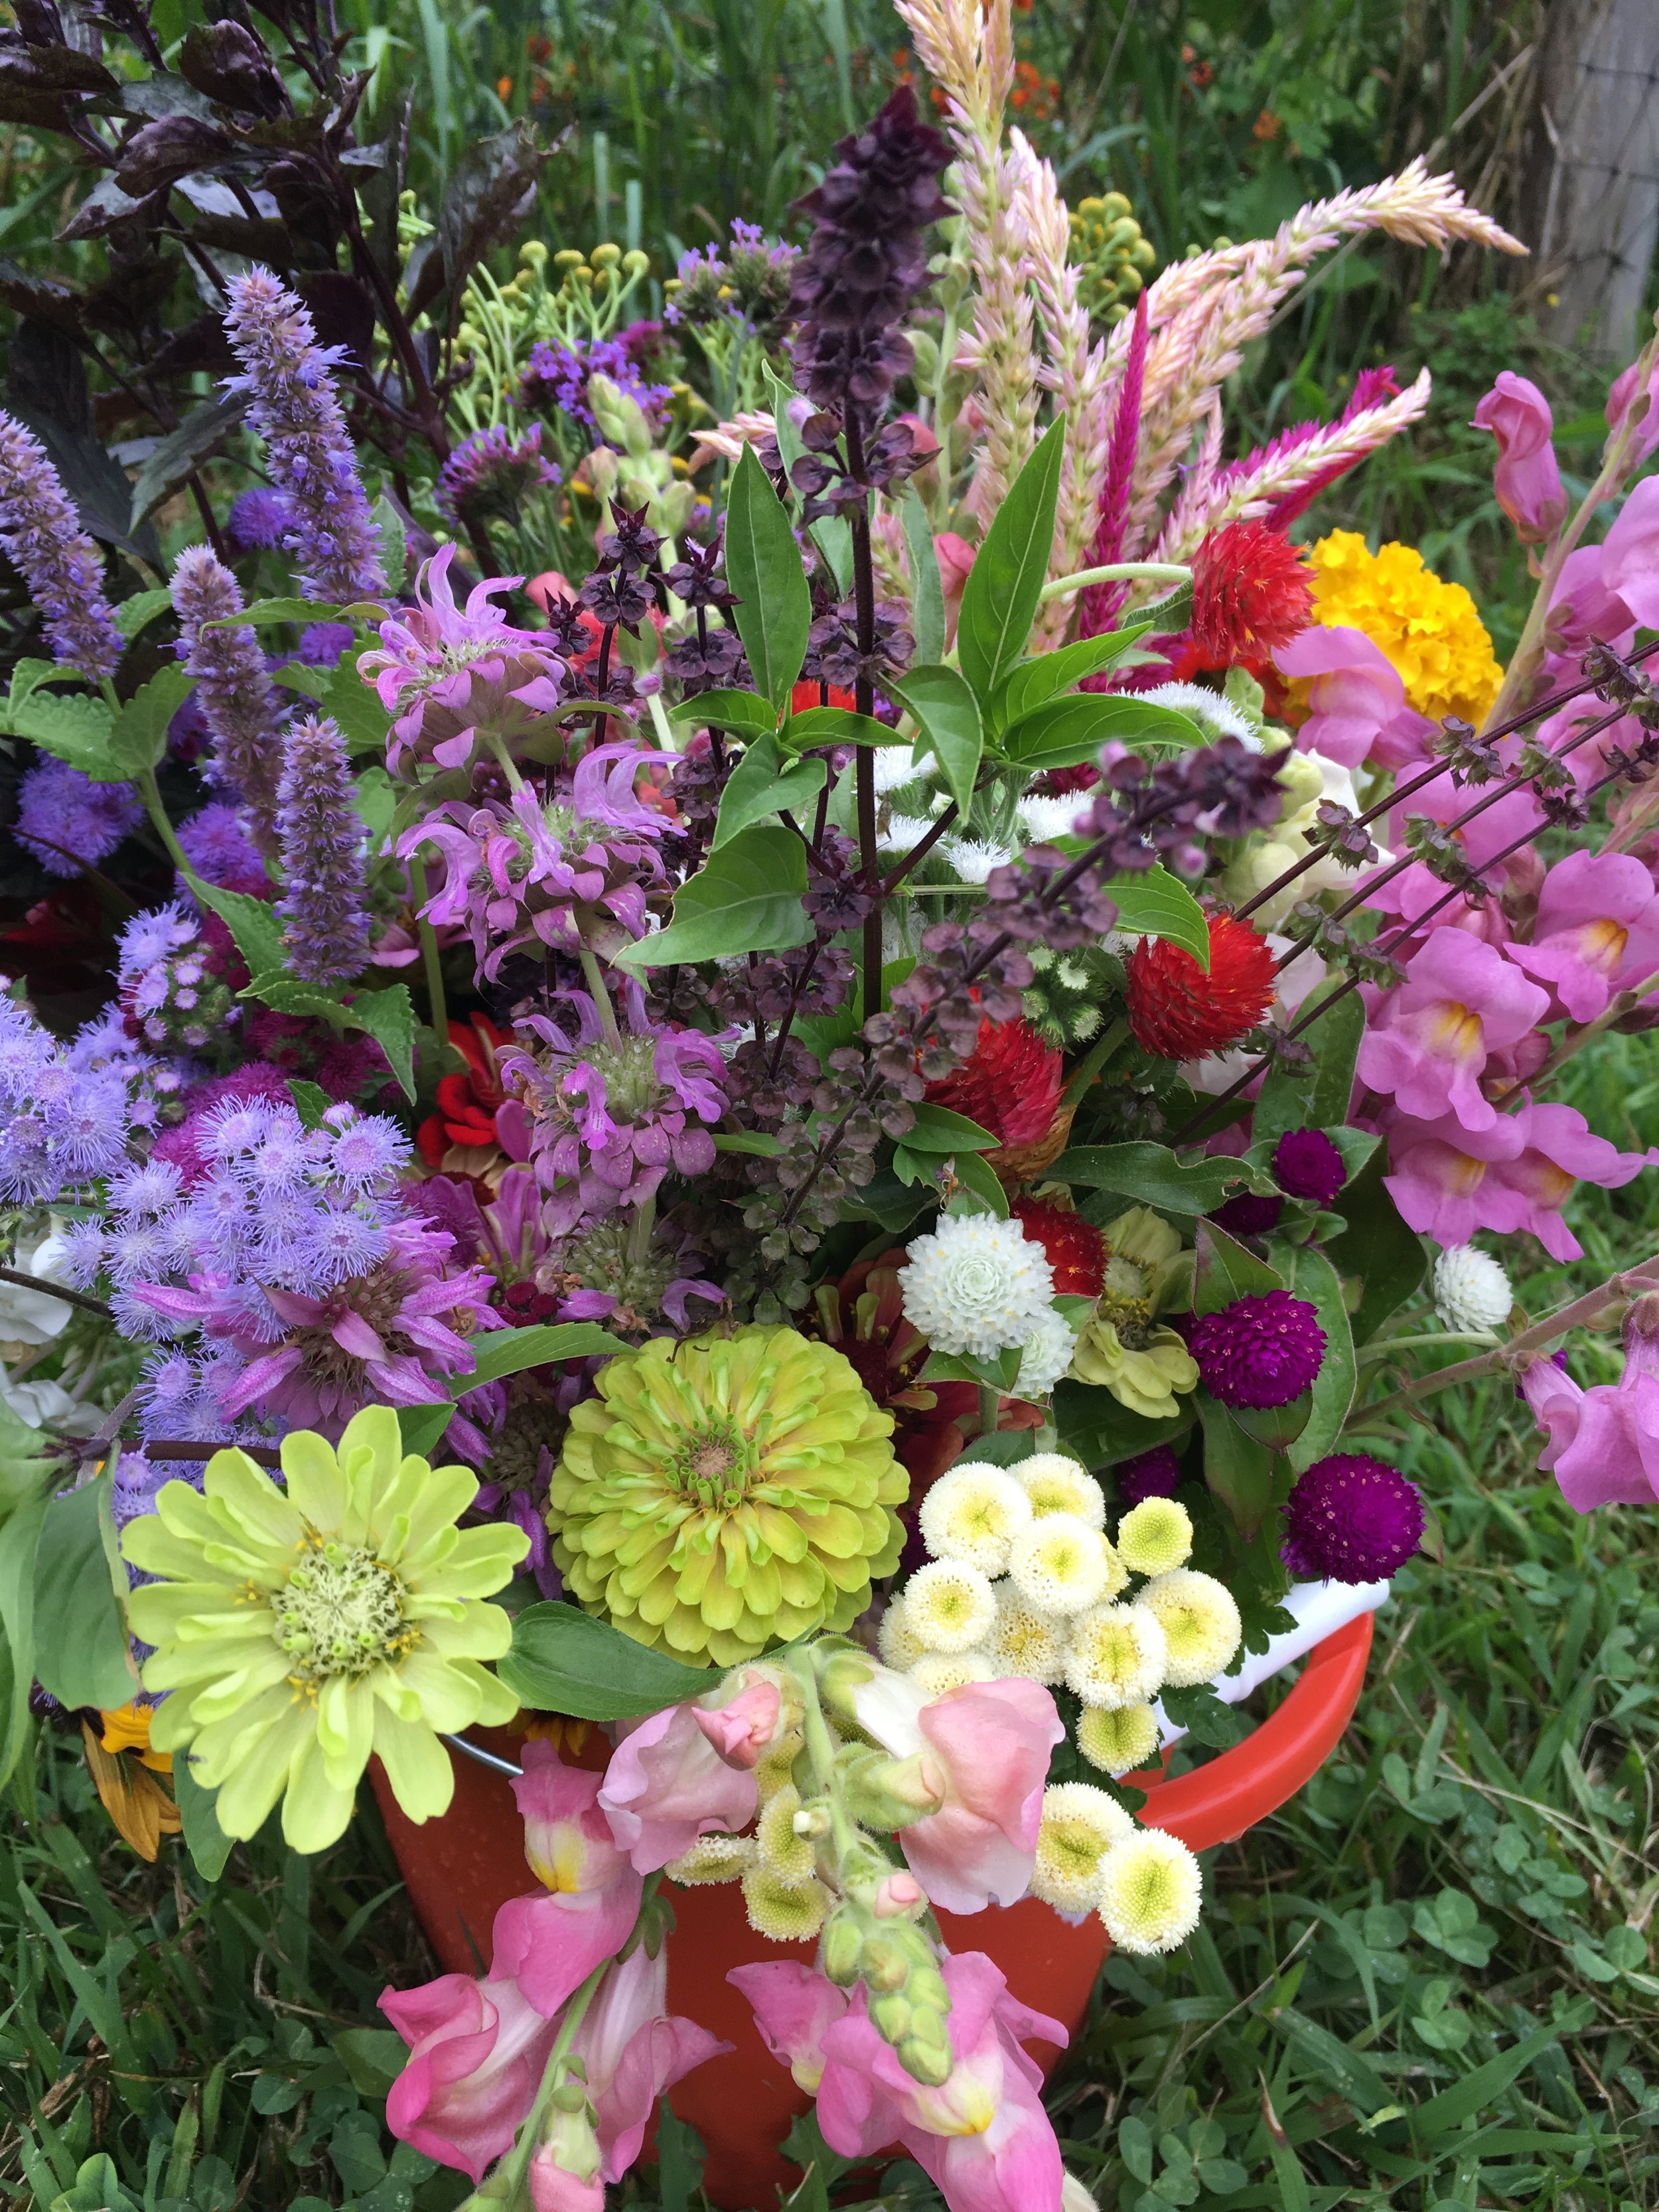 Field Tips for Harvesting Cut Flowers - White Flower Farm's blog